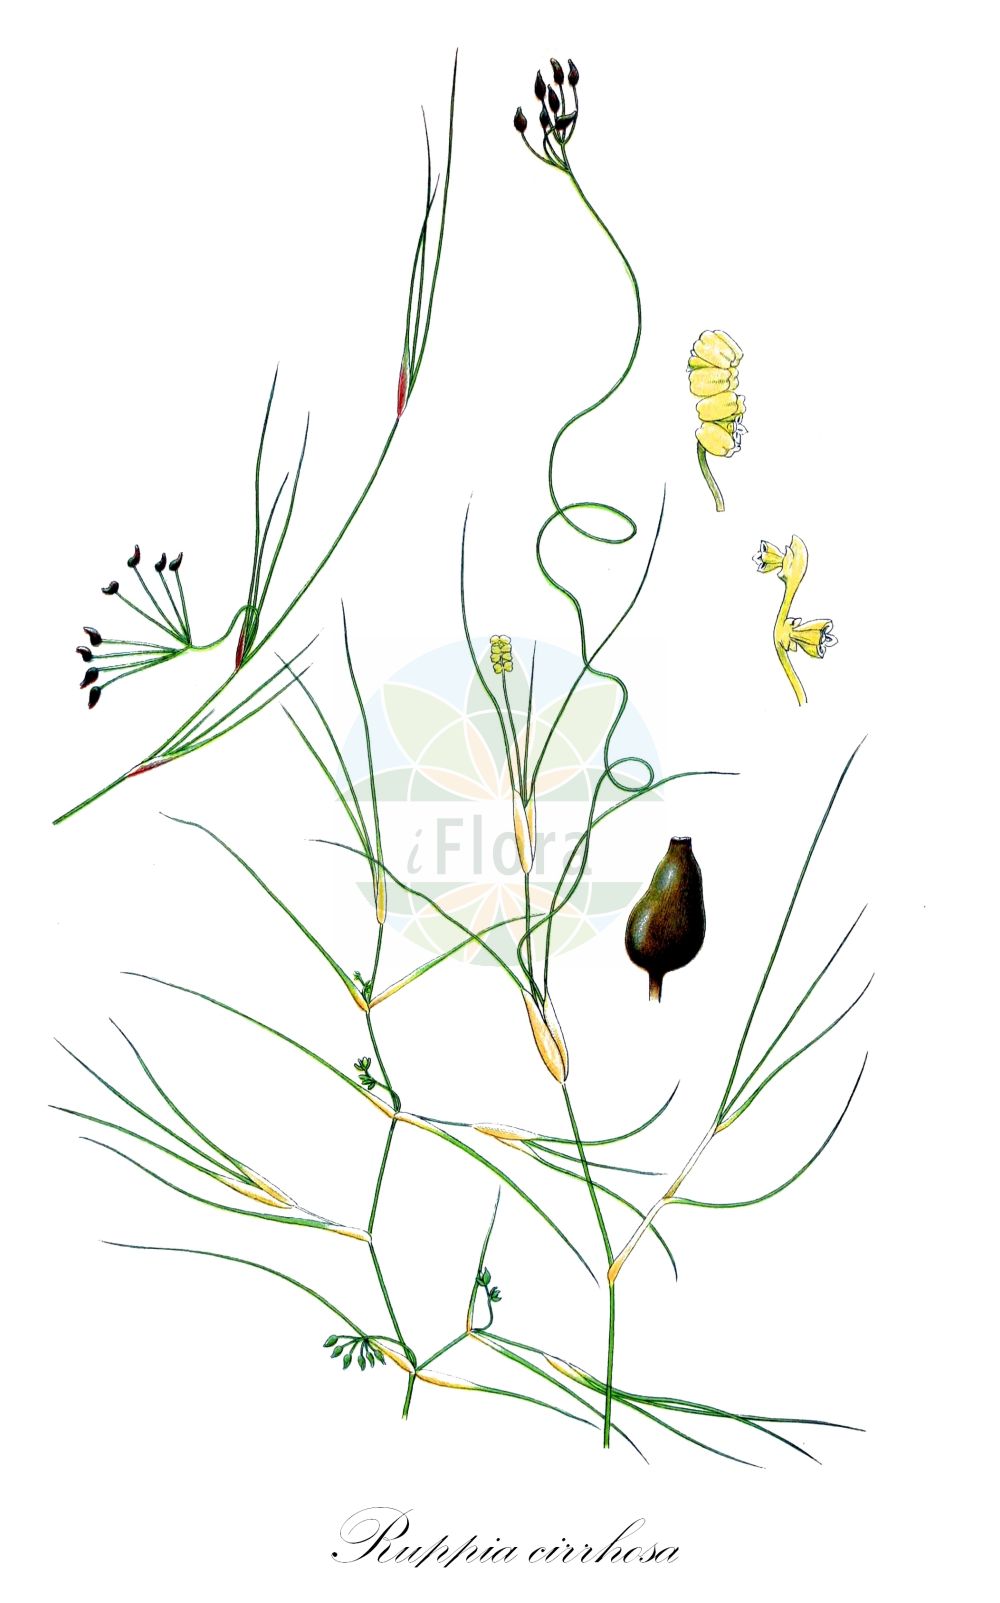 Historische Abbildung von Ruppia cirrhosa (Schraubige Salde - Spiral Tasselweed). Das Bild zeigt Blatt, Bluete, Frucht und Same. ---- Historical Drawing of Ruppia cirrhosa (Schraubige Salde - Spiral Tasselweed).The image is showing leaf, flower, fruit and seed.(Ruppia cirrhosa,Schraubige Salde,Spiral Tasselweed,Buccaferrea cirrhosa,Ruppia drepanensis,Ruppia spiralis,Spiralige Ruppie,Ditchgrass,Spiral Ditchgrass,Tassel Pondweed,Ruppia,Salde,Widgeonweed,Ruppiaceae,Saldengewaechse,Widgeonweed family,Blatt,Bluete,Frucht,Same,leaf,flower,fruit,seed,Lindman (1901-1905))